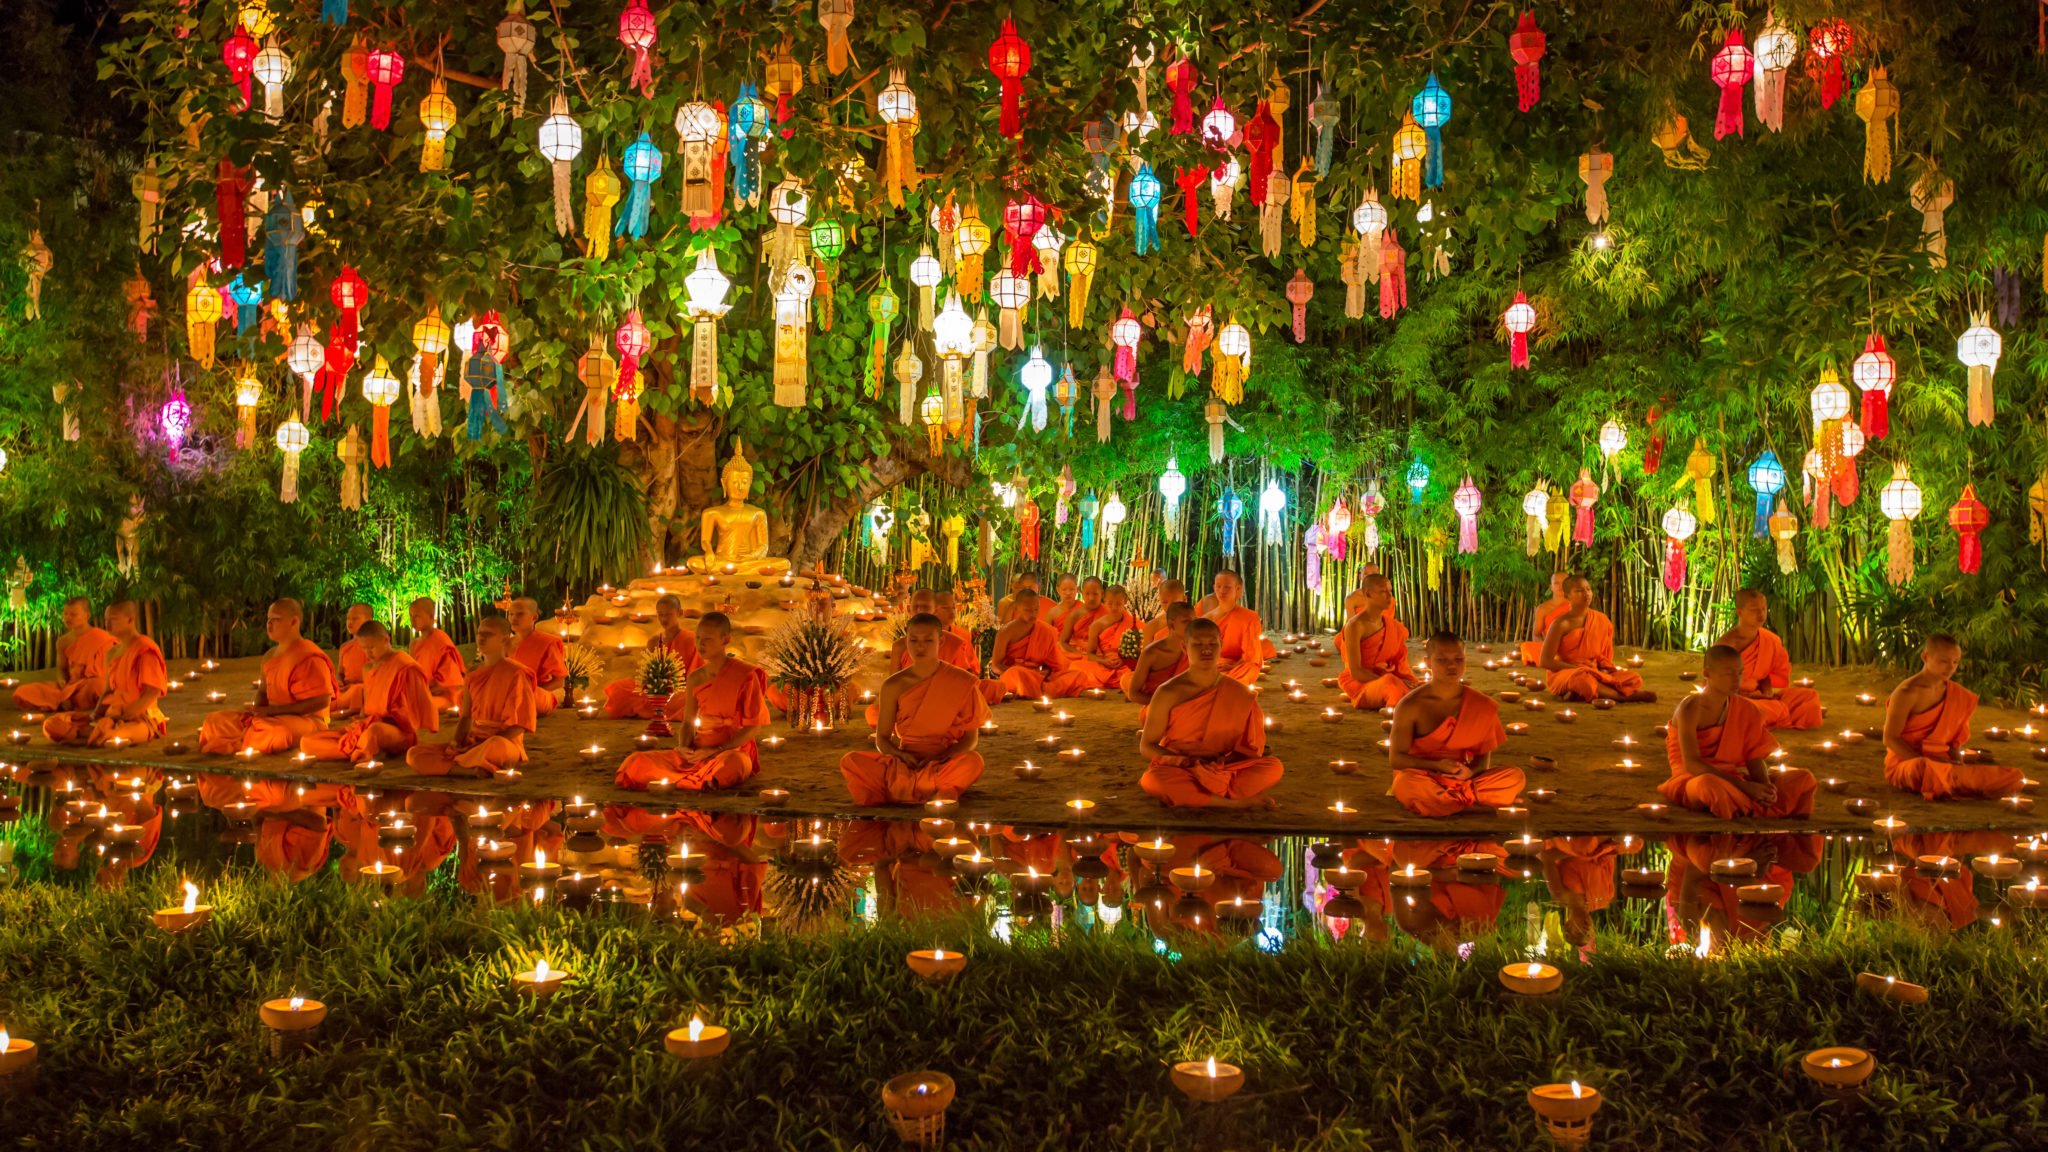 Dużo mnichów ubranych w pomarańczowe szaty siedzących nad wodą z zapalonymi świecami modlących się, na drzewach dużo kolorowych latarni, figura Buddy pod drzewem